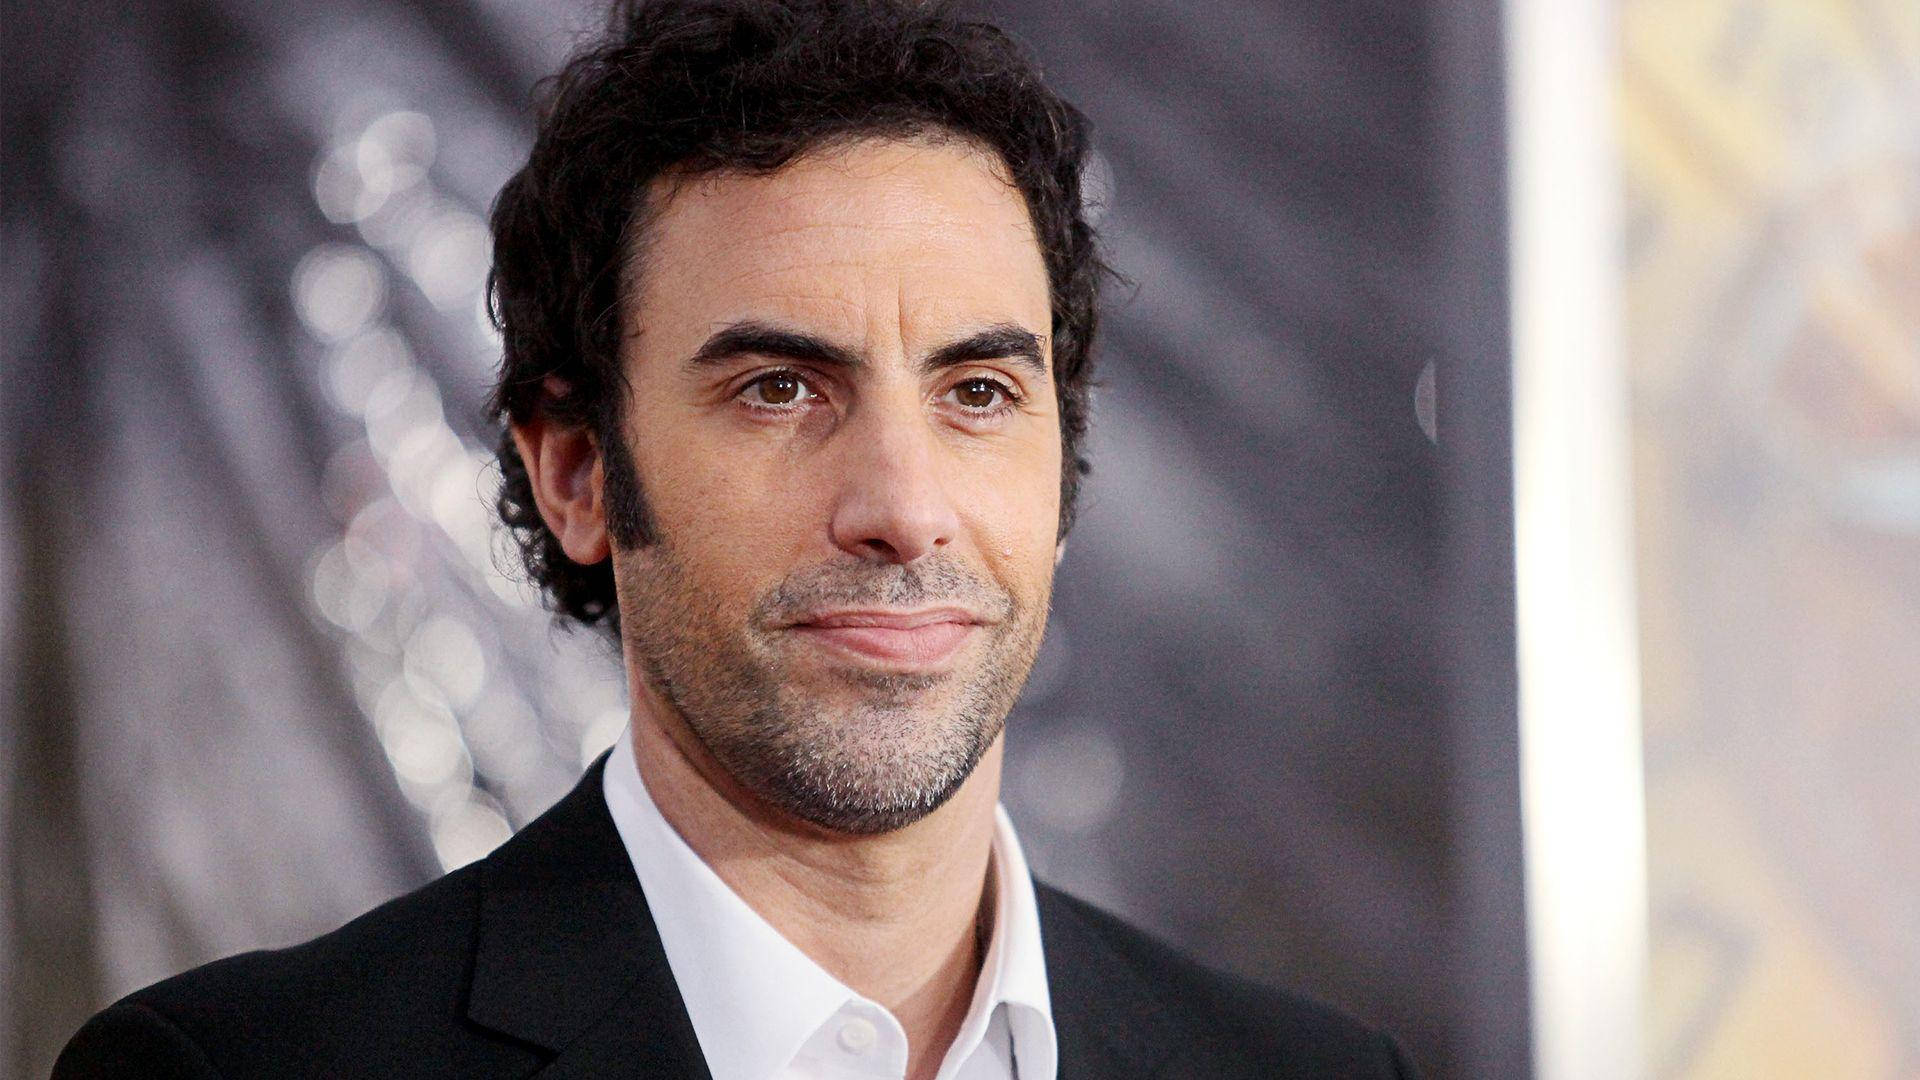 Sachabaron Cohen Borat 2 Premiere In Italian: Premiazione Di Sacha Baron Cohen Per Borat 2 Sfondo